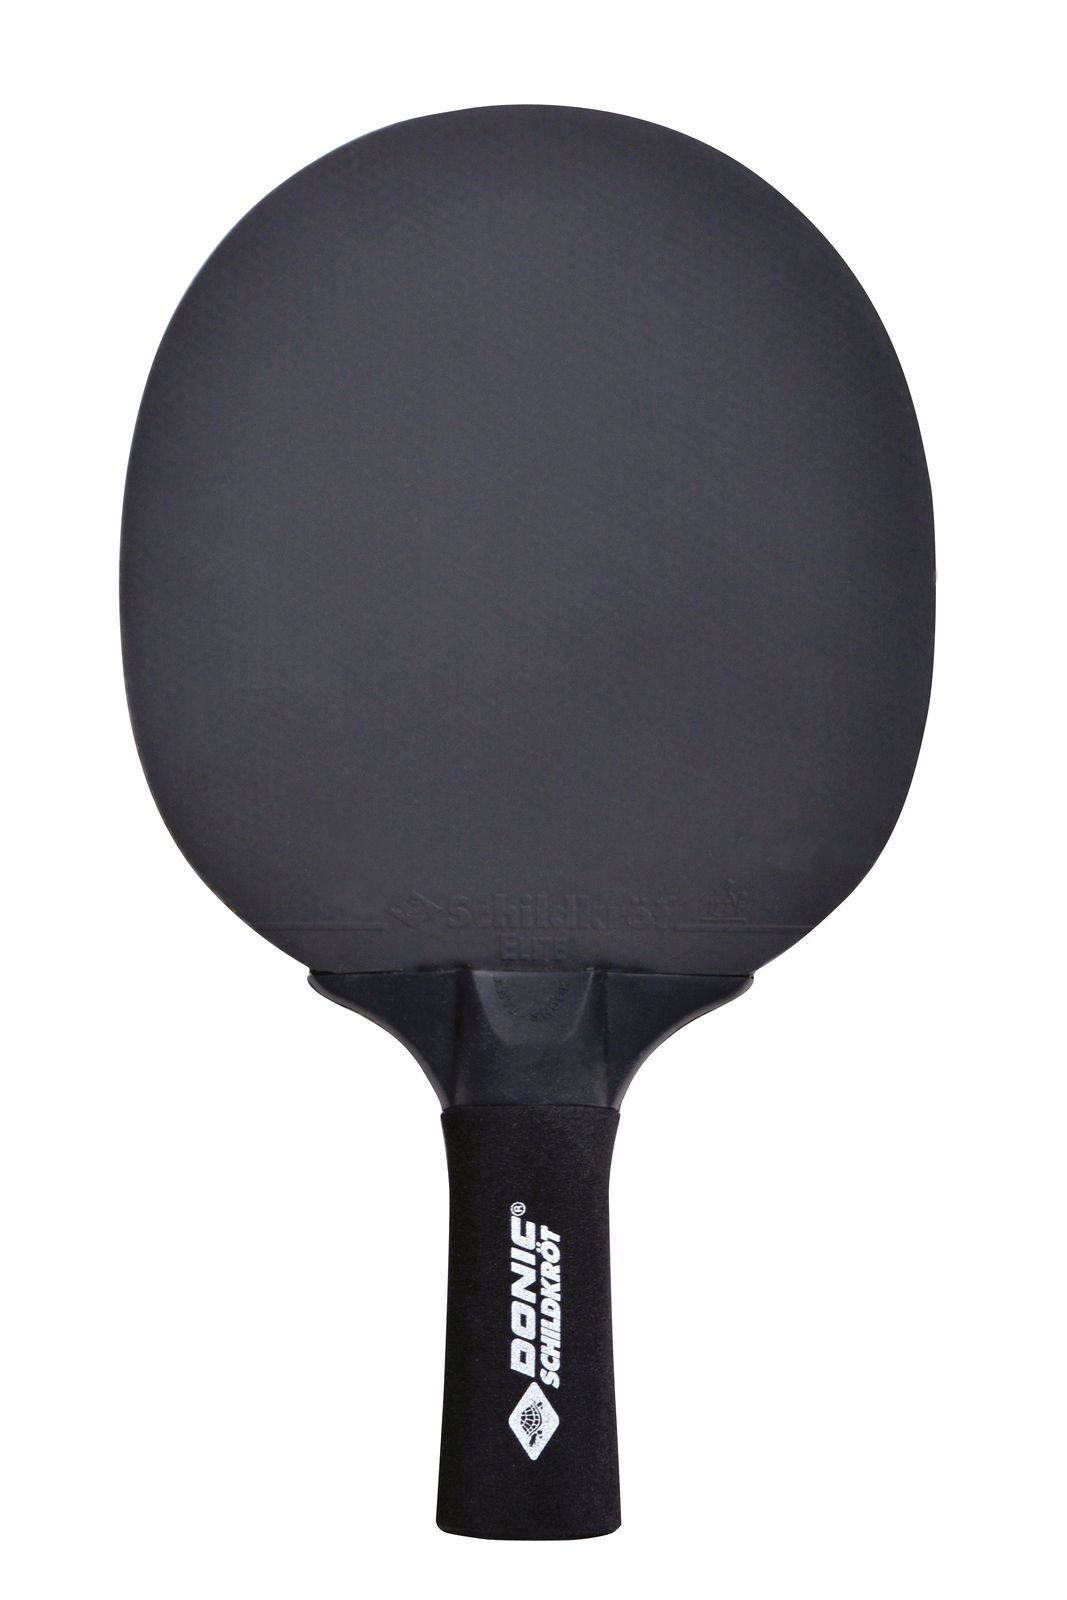 Donic-Schildkröt Tischtennisschläger Sensation Line Bat Table Tischtennis Racket Tennis Schläger 500